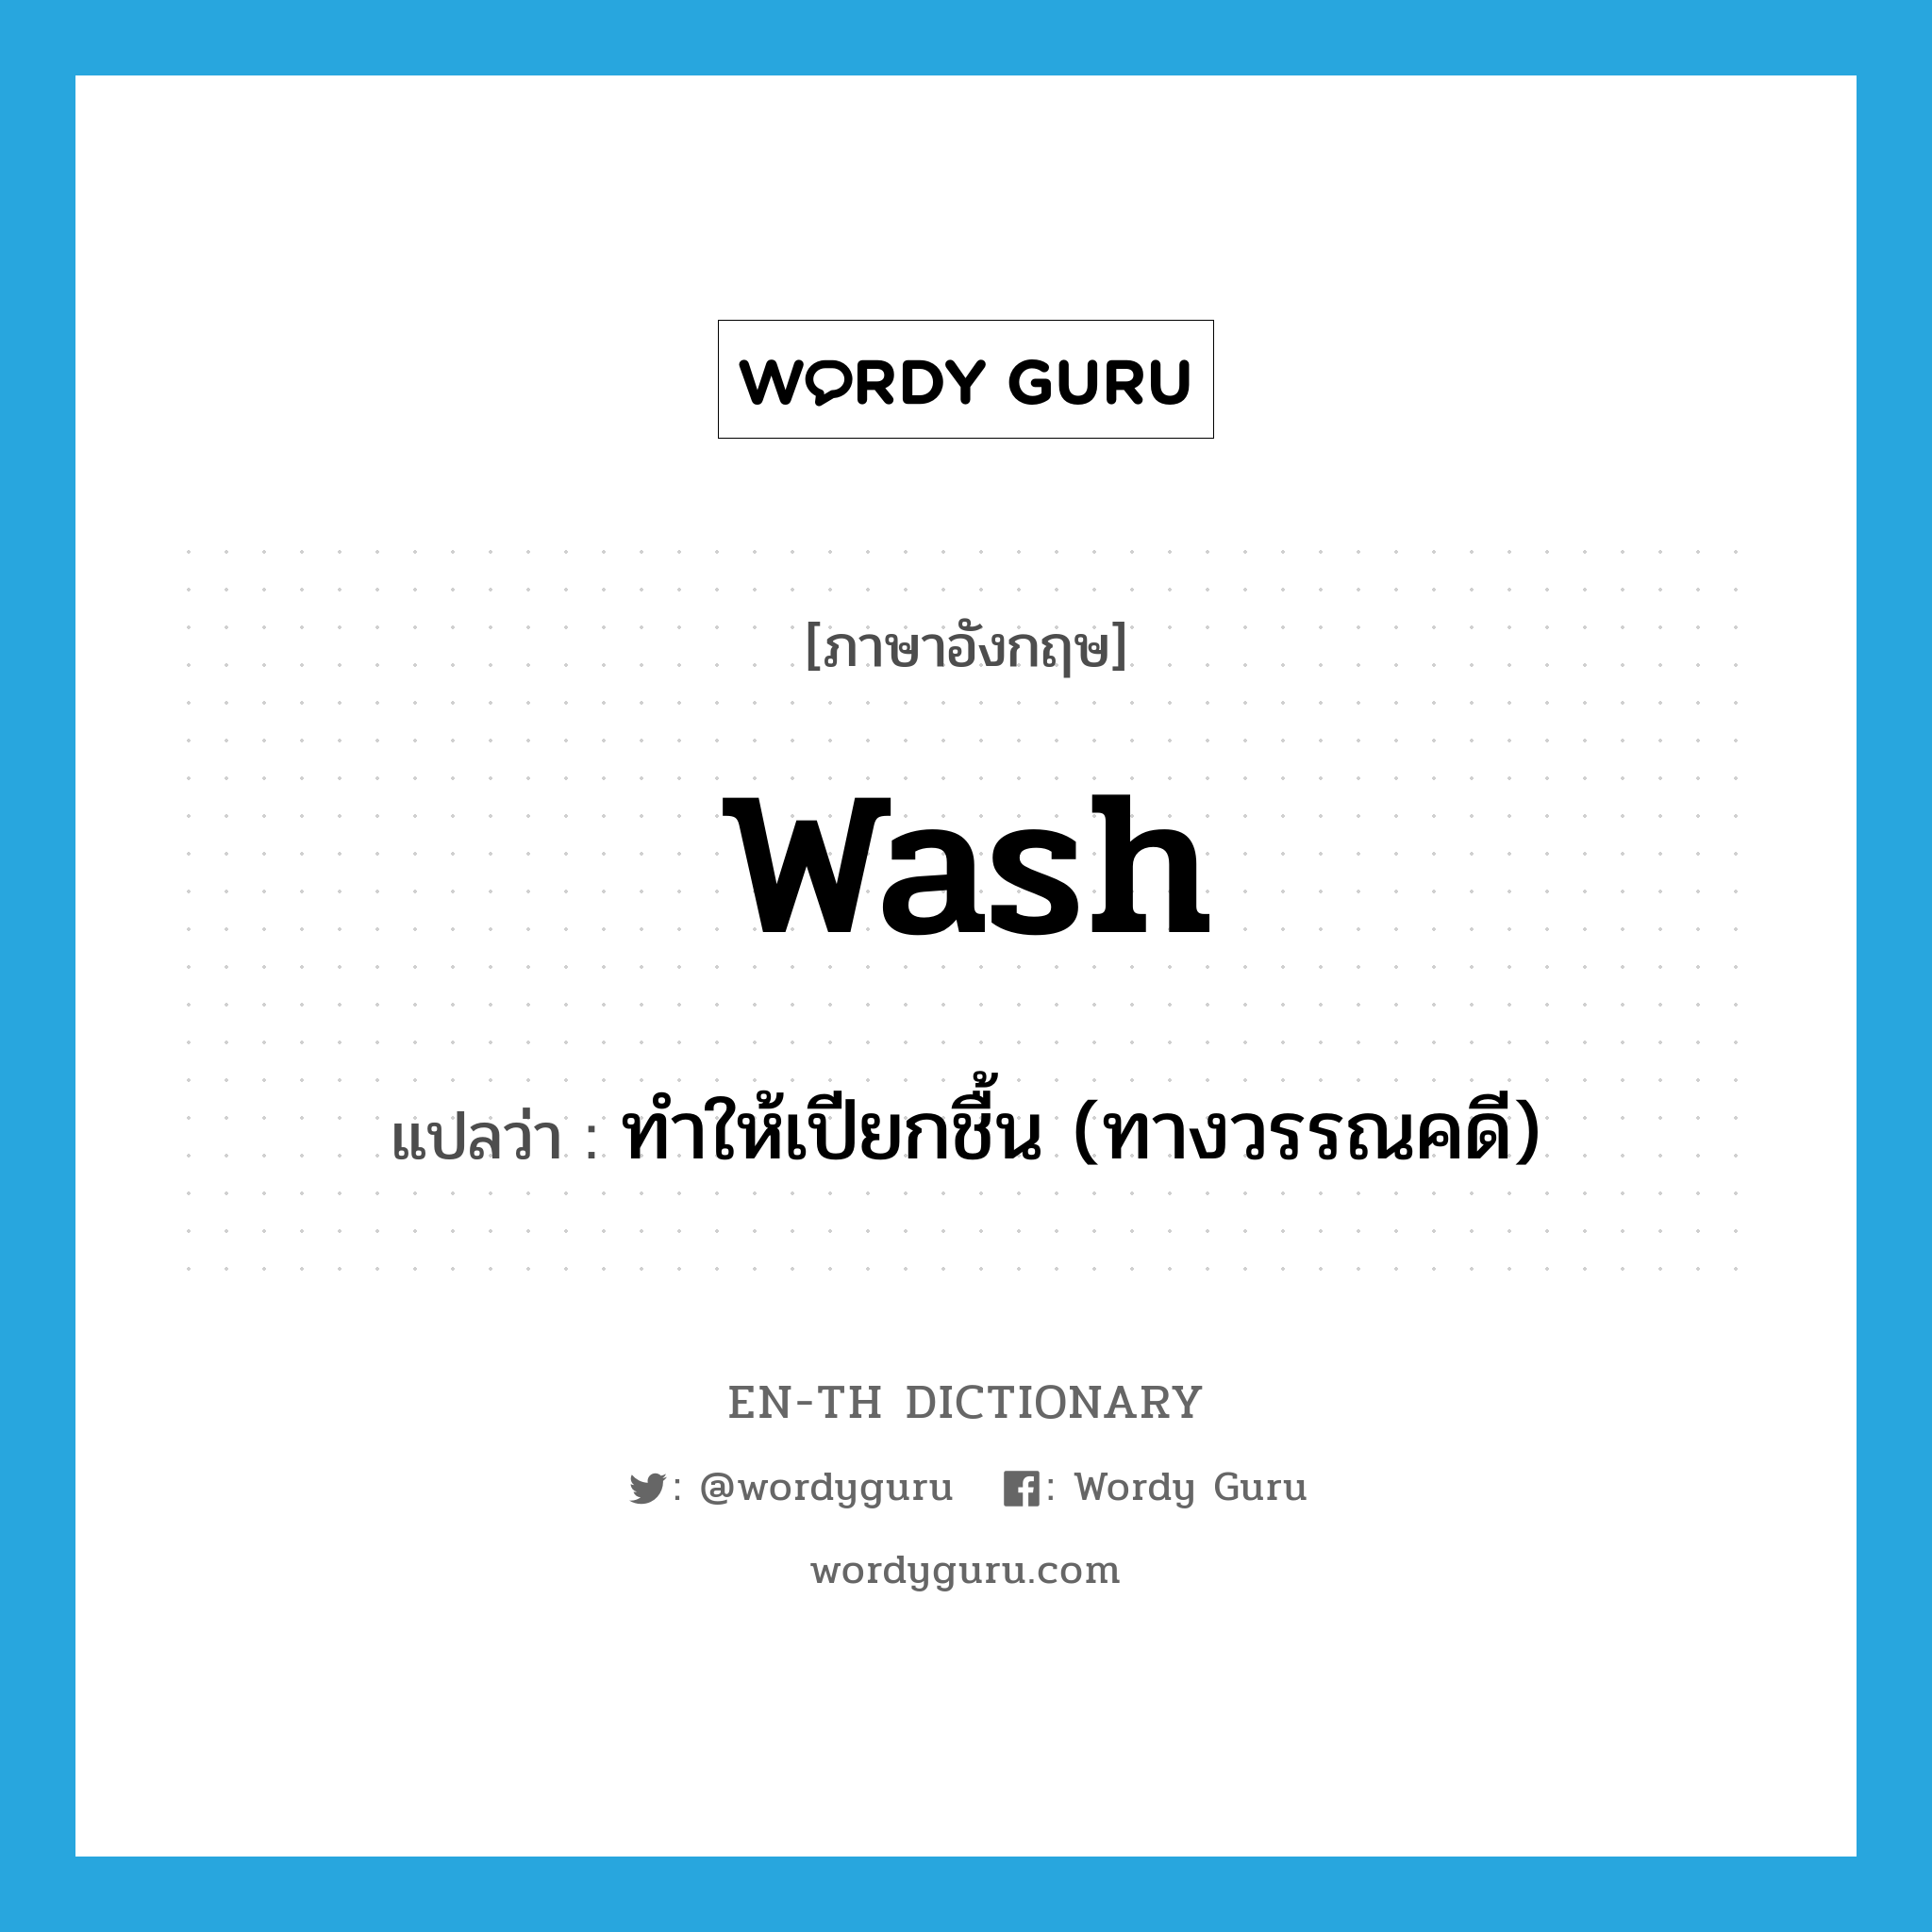 ทำให้เปียกชื้น (ทางวรรณคดี) ภาษาอังกฤษ?, คำศัพท์ภาษาอังกฤษ ทำให้เปียกชื้น (ทางวรรณคดี) แปลว่า wash ประเภท VT หมวด VT